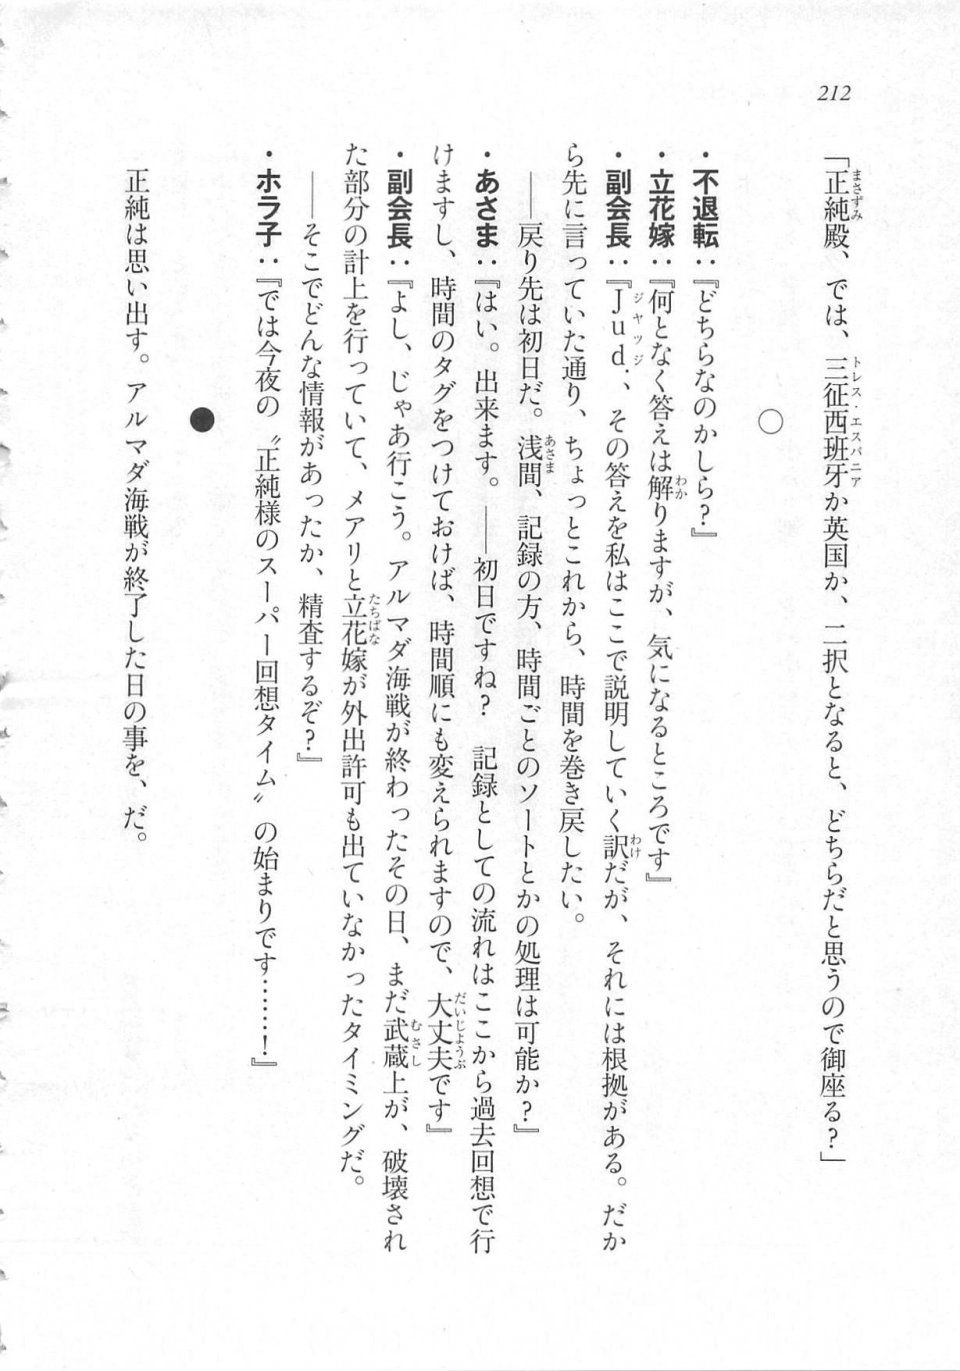 Kyoukai Senjou no Horizon LN Sidestory Vol 3 - Photo #216